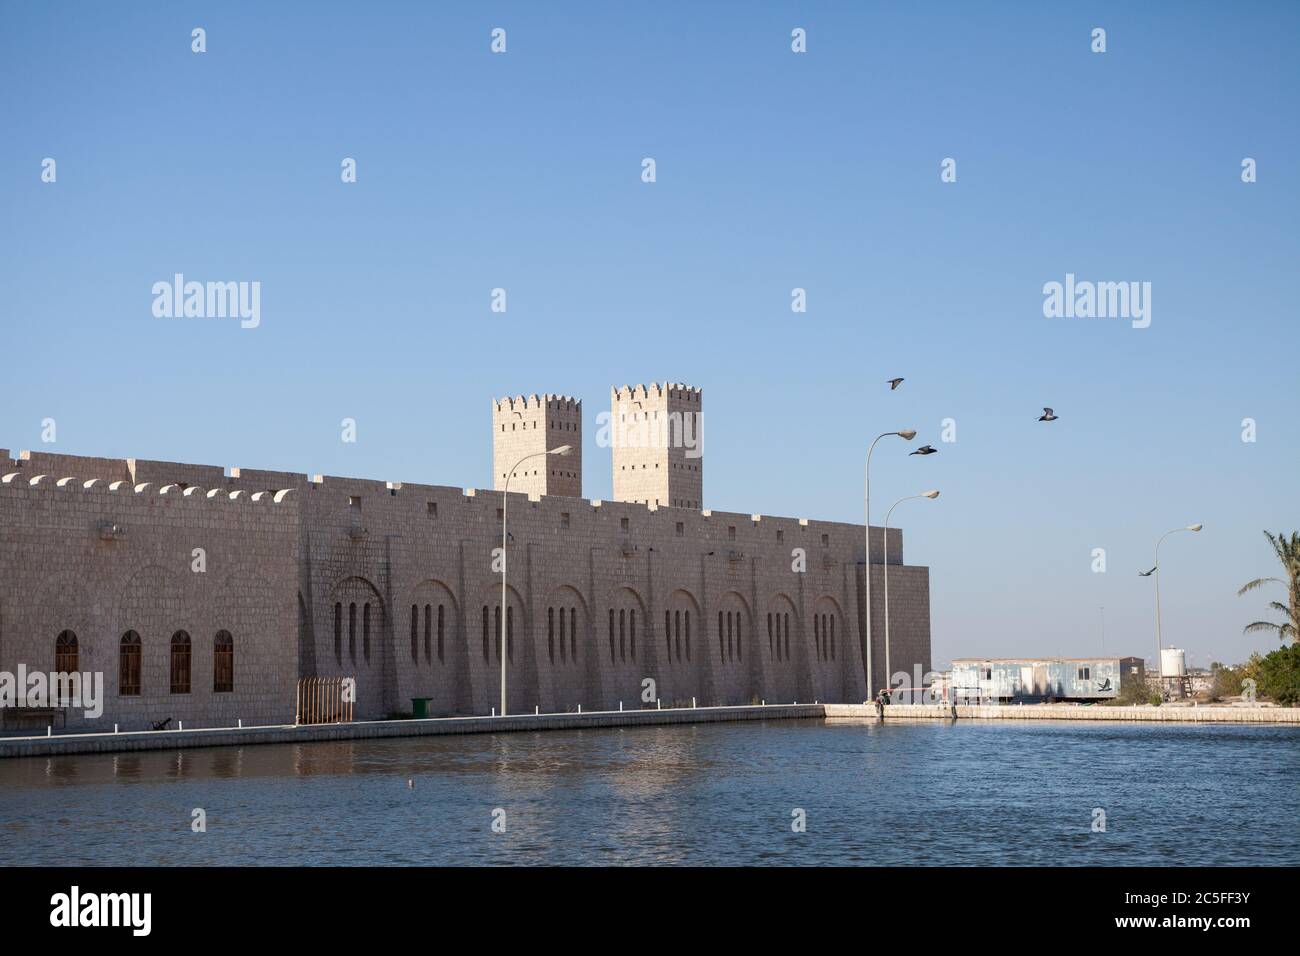 Sheikh Faisal bin Qassim Al Thani Museum in Al Samriya, Katar. Ein privates Museum, das für die Öffentlichkeit zugänglich ist, mit einer persönlichen Sammlung von Artefakten einschließlich Stockfoto